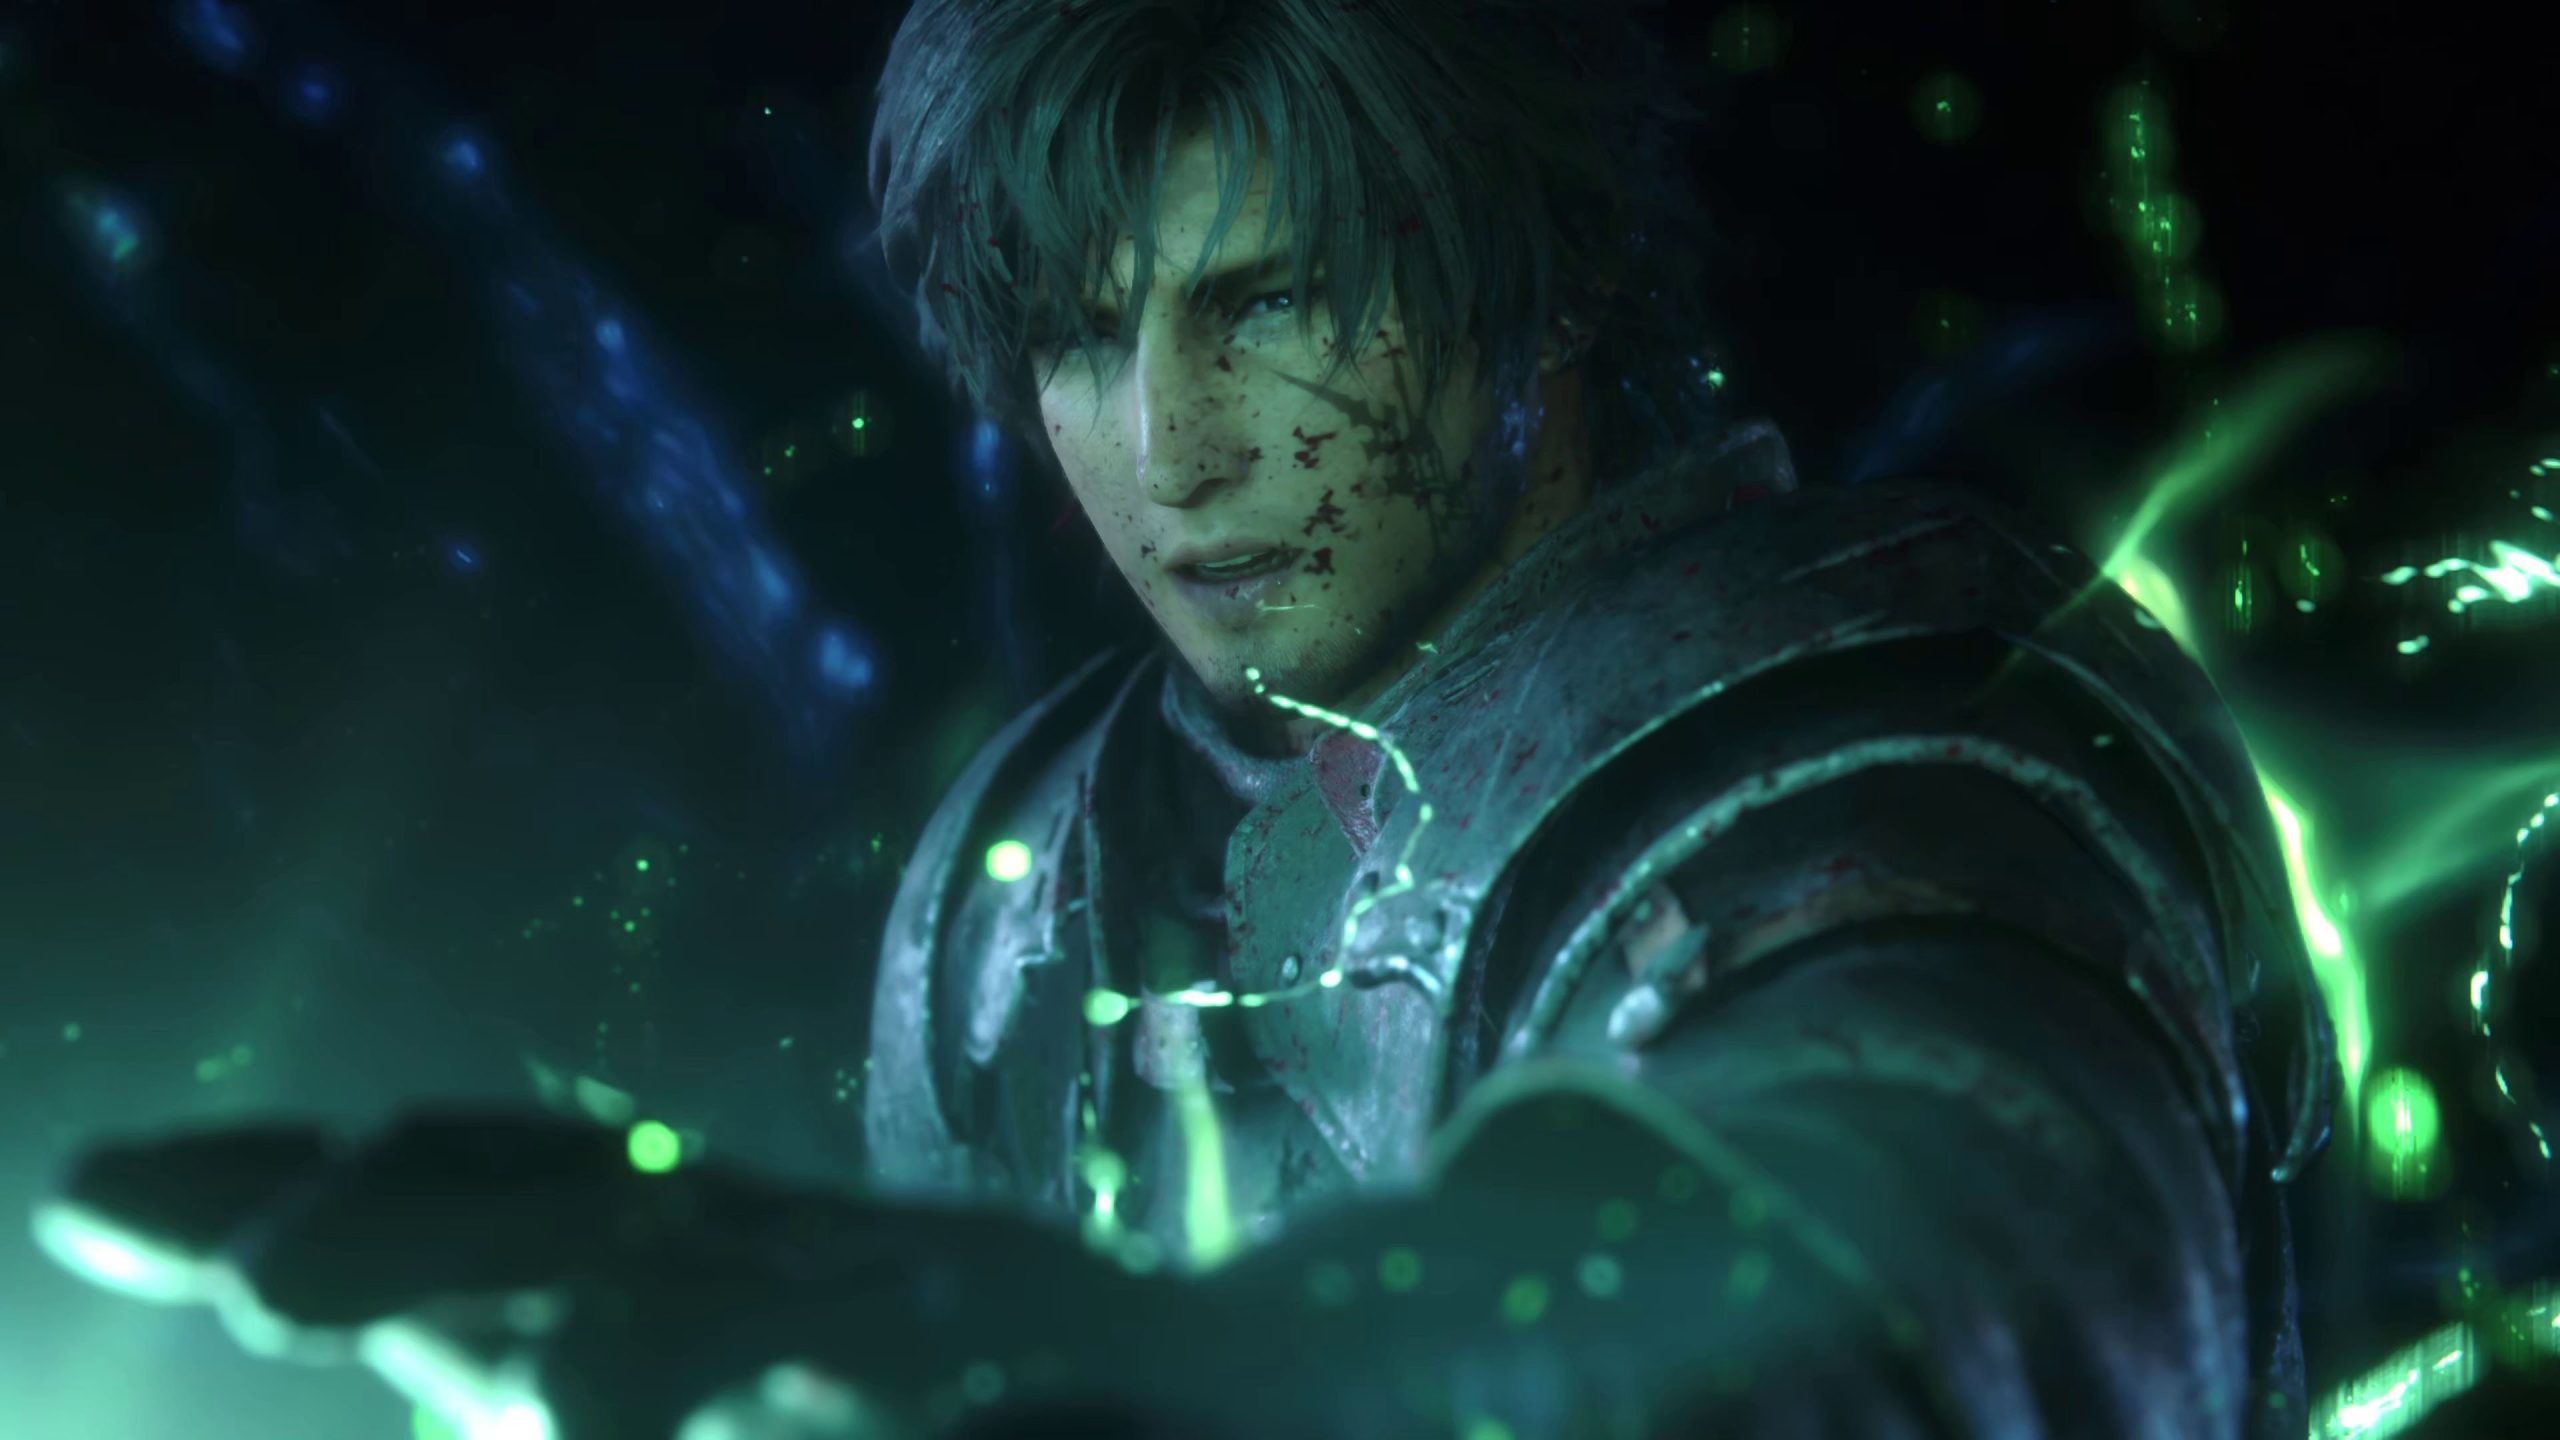 Final Fantasy XVI - Next Gen Immersion Trailer